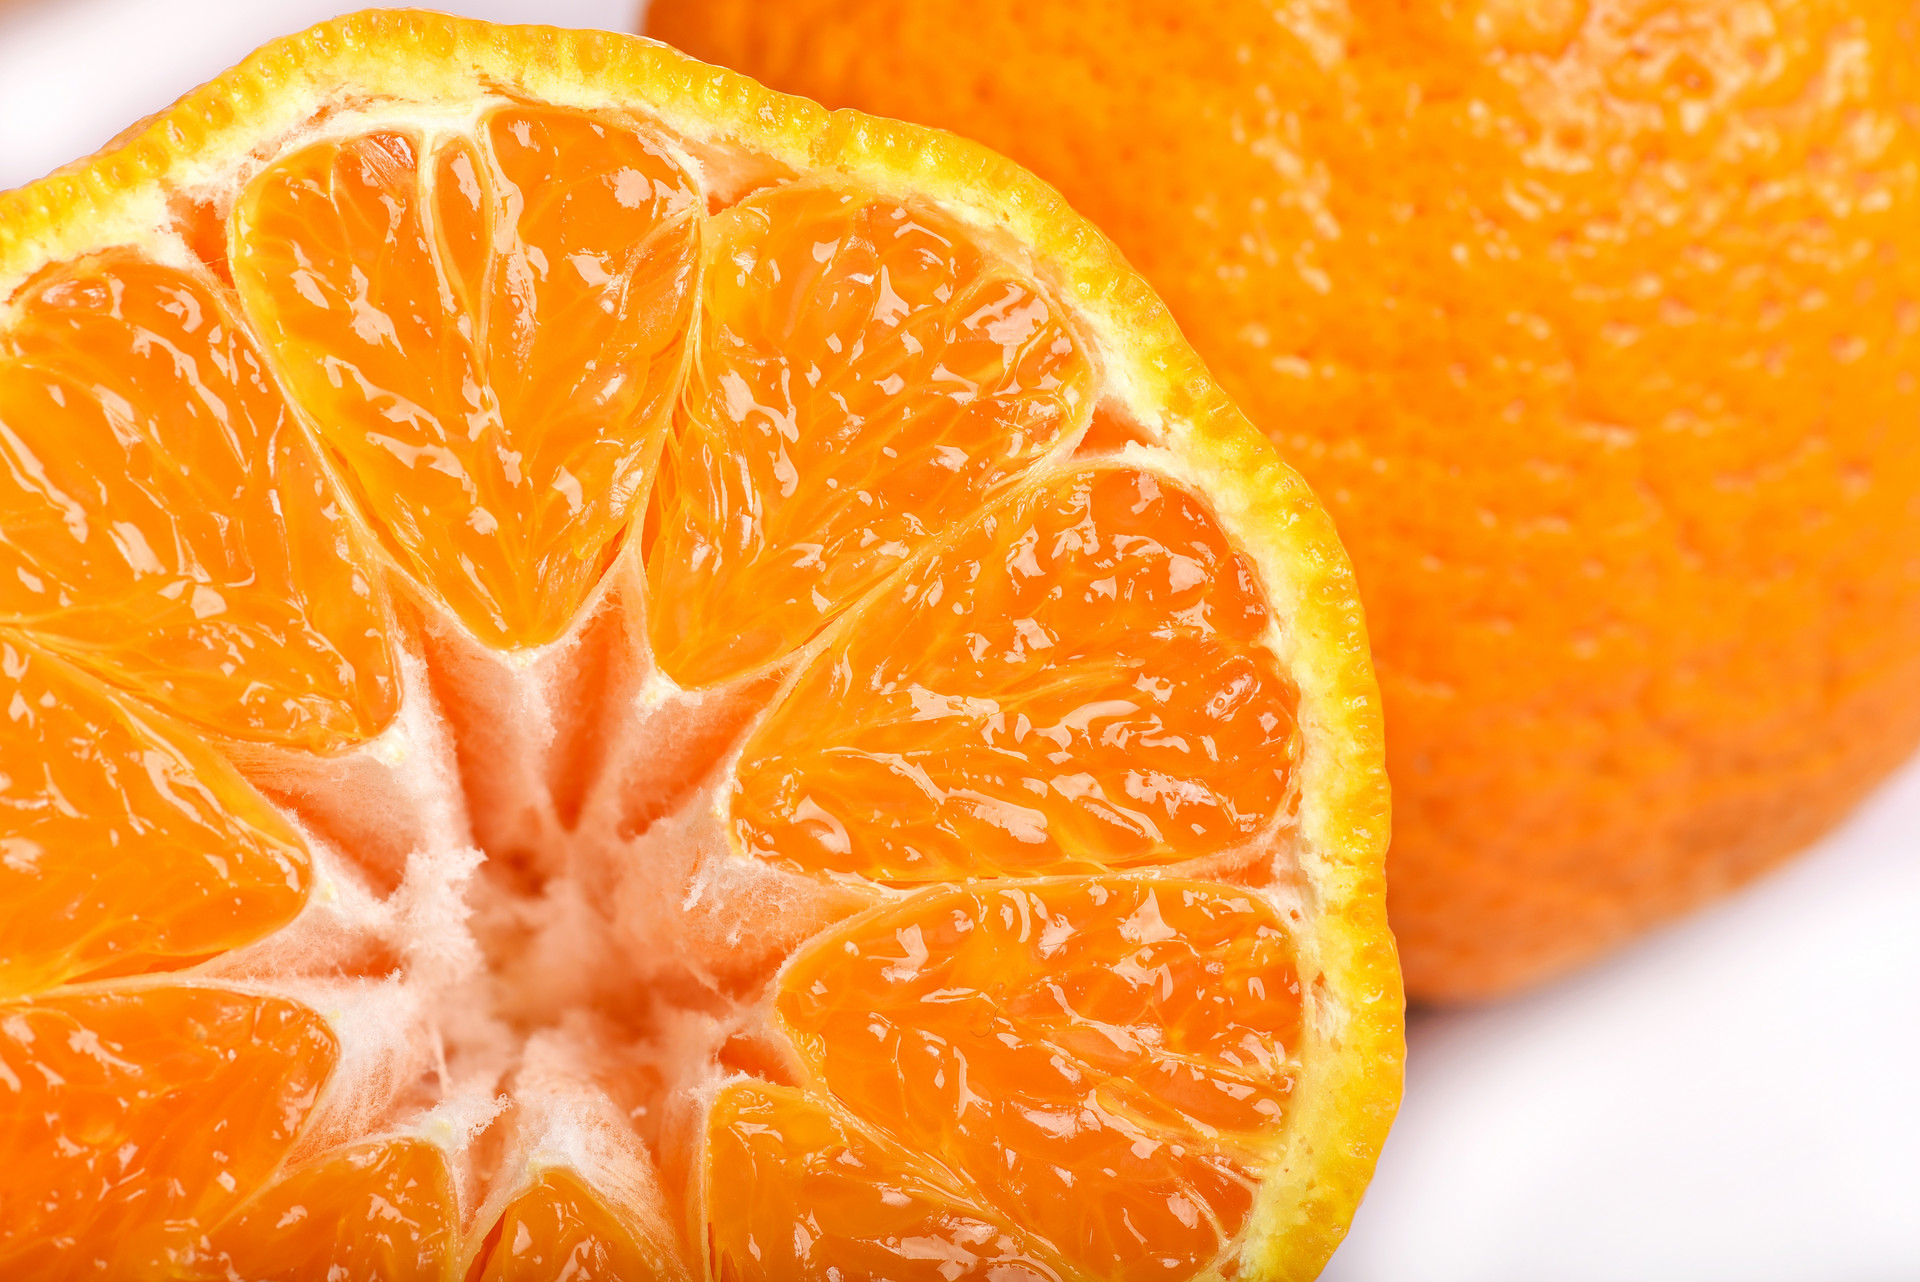 丑橘和普通橘子的区别 丑橘和一般的橘子是不一样的，虽然都是柑橘类水果，但是还是有很大的区别，不管是个头上还是性味上。那丑橘和普通橘子具体有哪些区别呢? 营养成分含量不同 丑橘的主要营养成分，它的维生素C 的含量是50mg/100g。 普通橘子的维生素C含量大约28mg/100g。 故此，丑橘的维生素C含量要远远大约其他同类水果，营养价值很高。 营养元素种类不同 丑橘和普通的橘子都含有丰富的维生素C。 但丑橘有很多普通橘子没有的微量元素，营养价值比普通橘子多。 性味不同 丑橘是凉性水果，多吃也不会上火的。 普通橘子是热性水果，多吃易上火。 吃丑橘有什么好处? 1、吃丑柑能减肥：不含脂肪也不含钠; 2、丑柑中的营养成分及其他植物化学成分有助于抗击癌症; 3、天天吃1个丑柑还能防止中风; 4、丑柑内含多种有效预防心脏病元素; 5、多吃丑柑能预防骨质疏松; 6、丑柑能帮助肠胃的消化，起到排毒养颜的功效! 7、丑柑随时都可以吃，天天都能吃，里面有大量的维生素C。